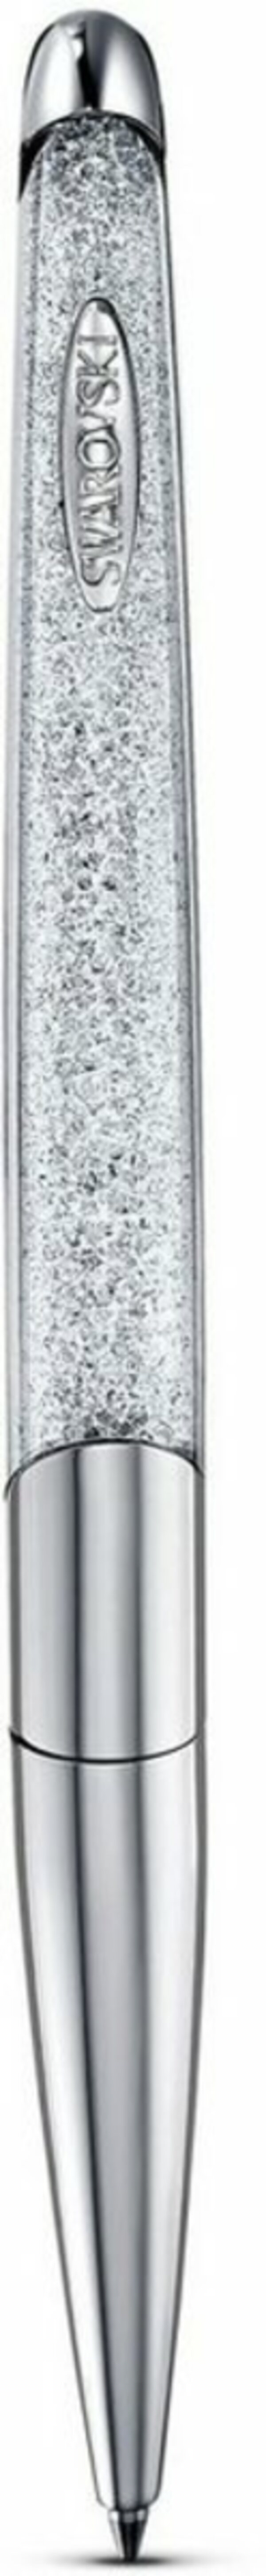 Bild 1 von Swarovski Kugelschreiber Crystalline Nova, weiß, verchromt, 5534324, mit Swarovski® Kristallen, Silberfarben|weiß